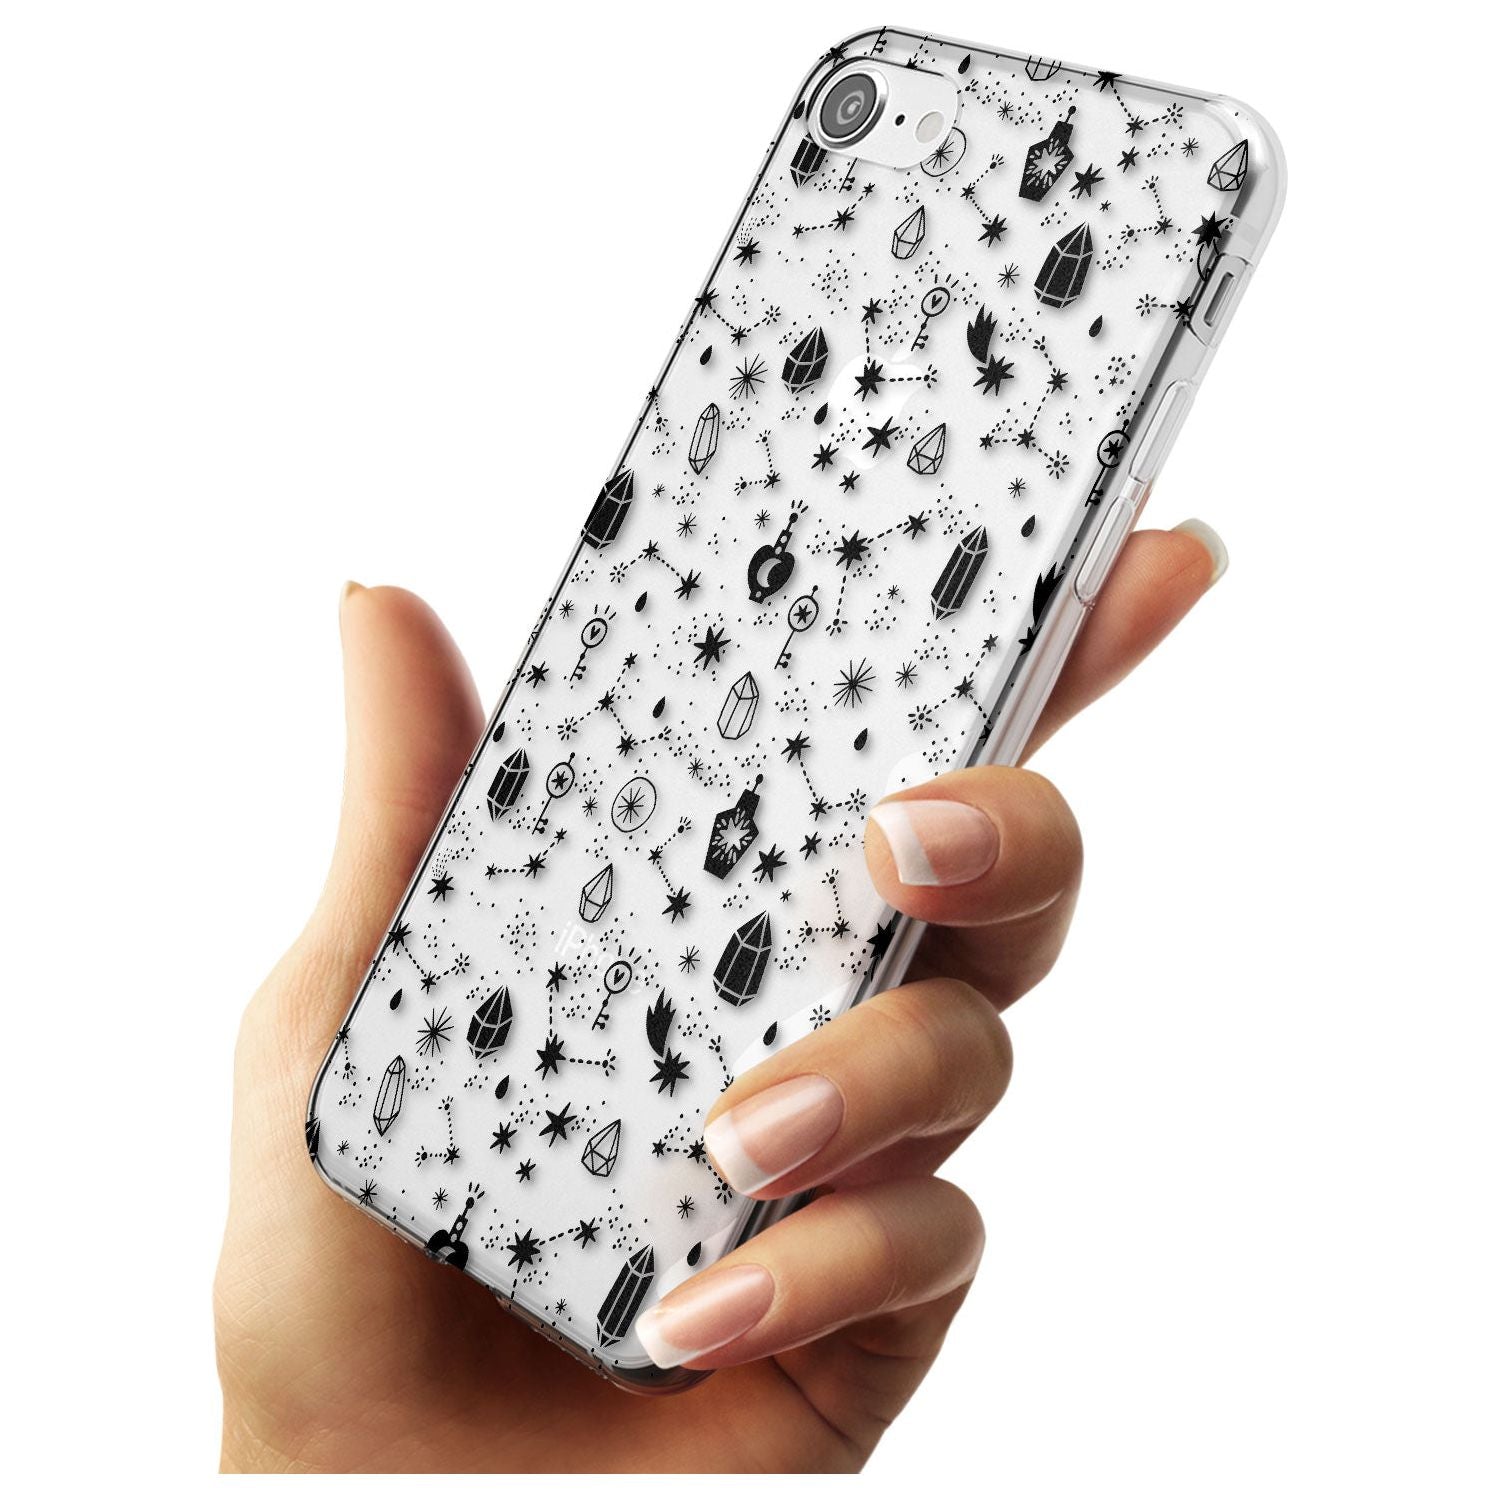 Black Magic Slim TPU Phone Case for iPhone SE 8 7 Plus